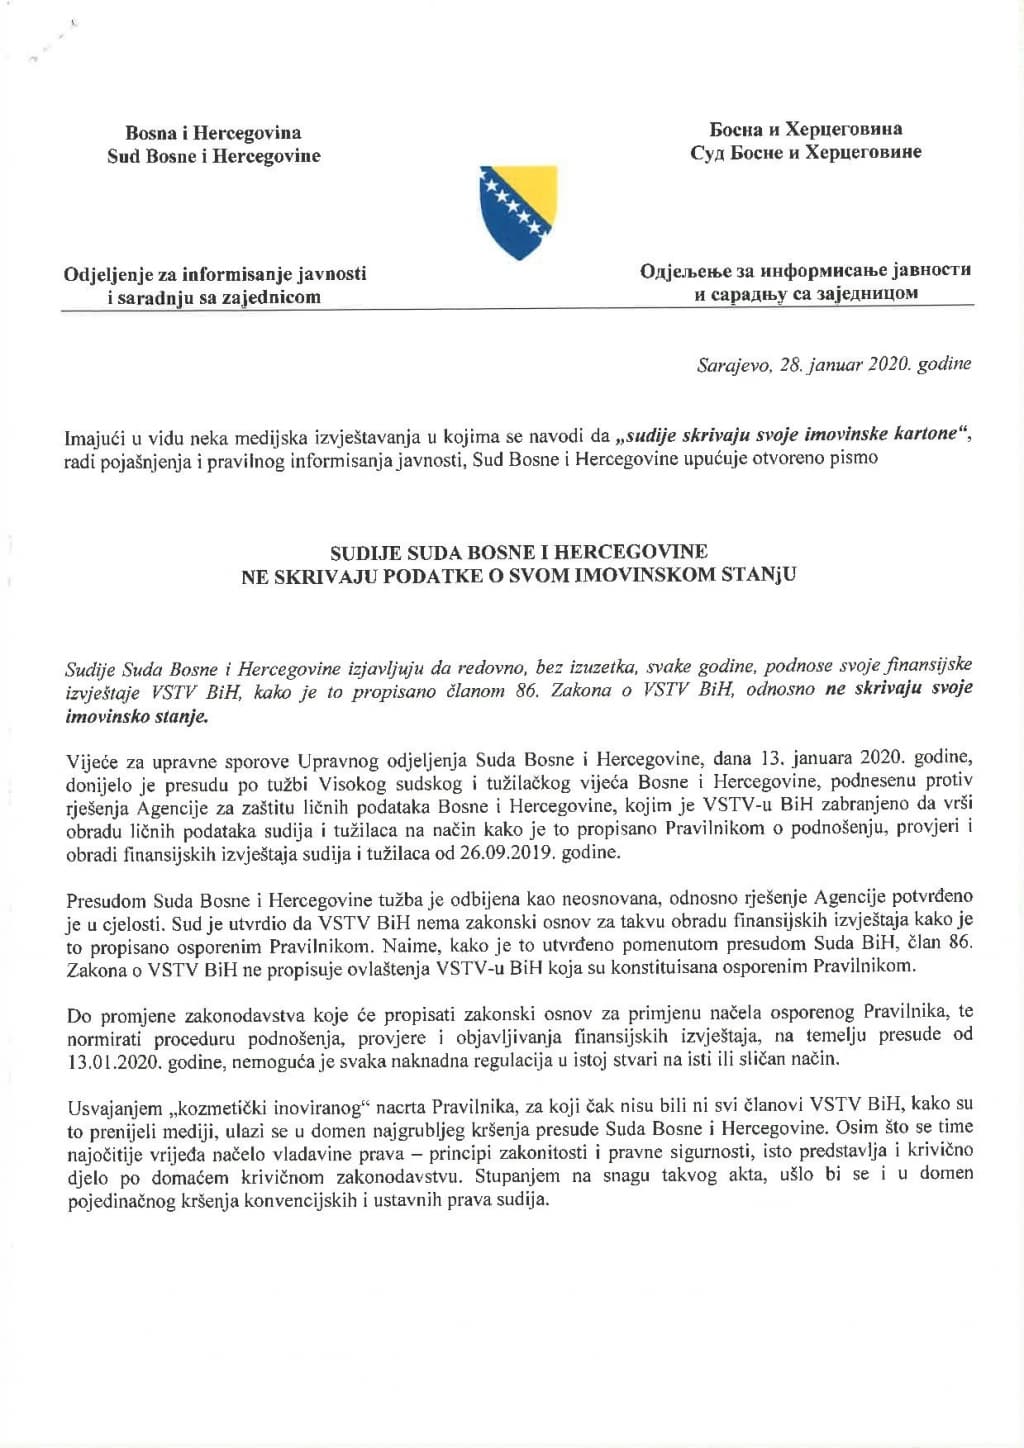 Otvoreno pismo sudija Suda Bosne i Hercegovine - 28 01 2020-page-001.jpg